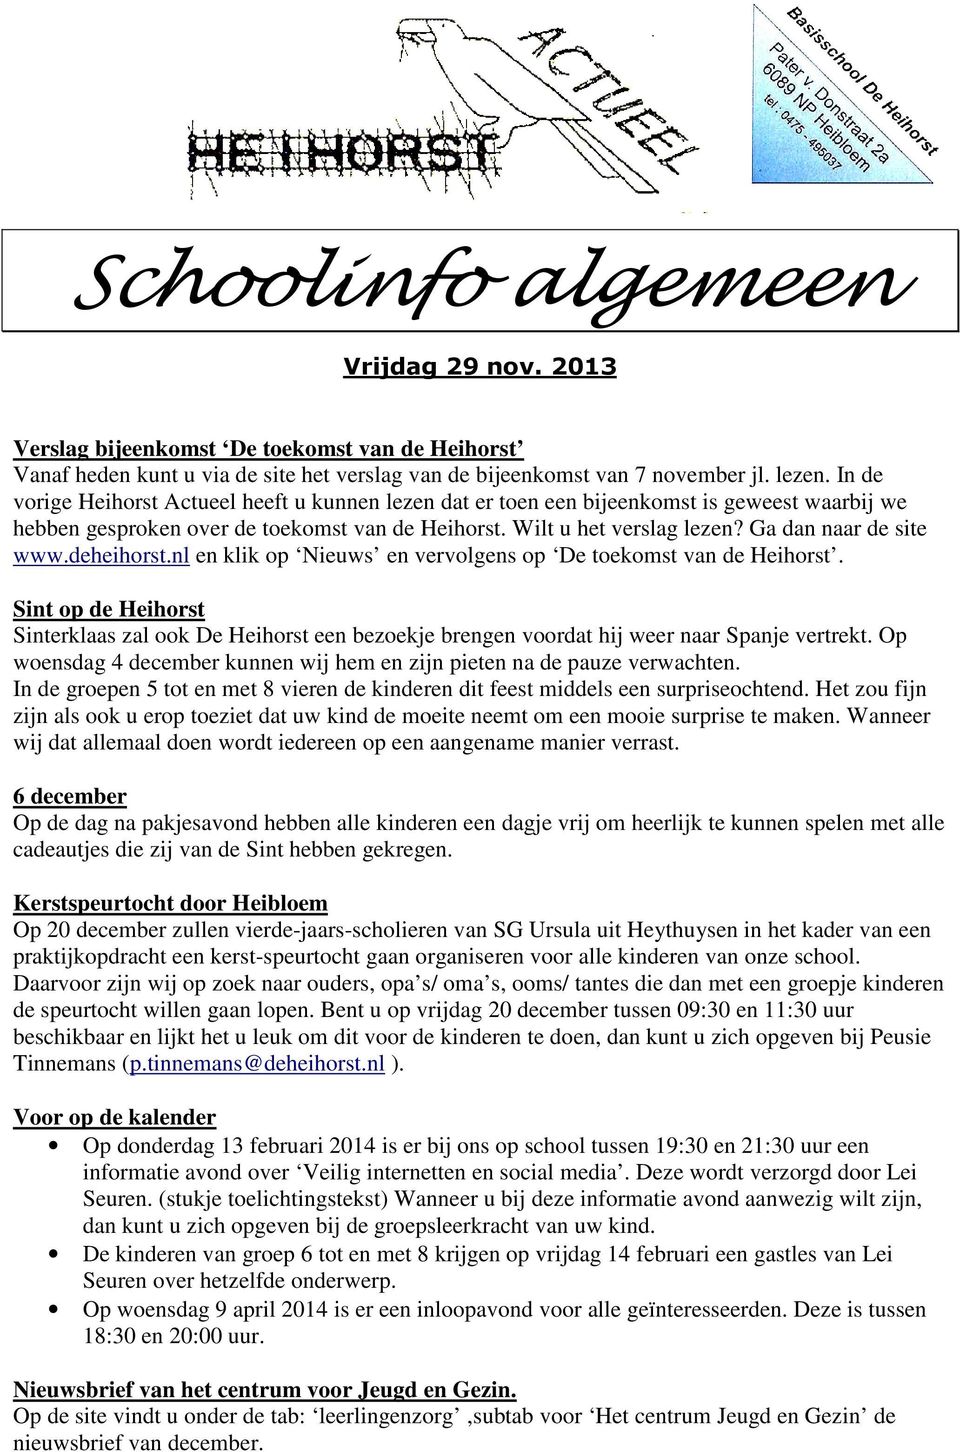 Ga dan naar de site www.deheihorst.nl en klik op Nieuws en vervolgens op De toekomst van de Heihorst.